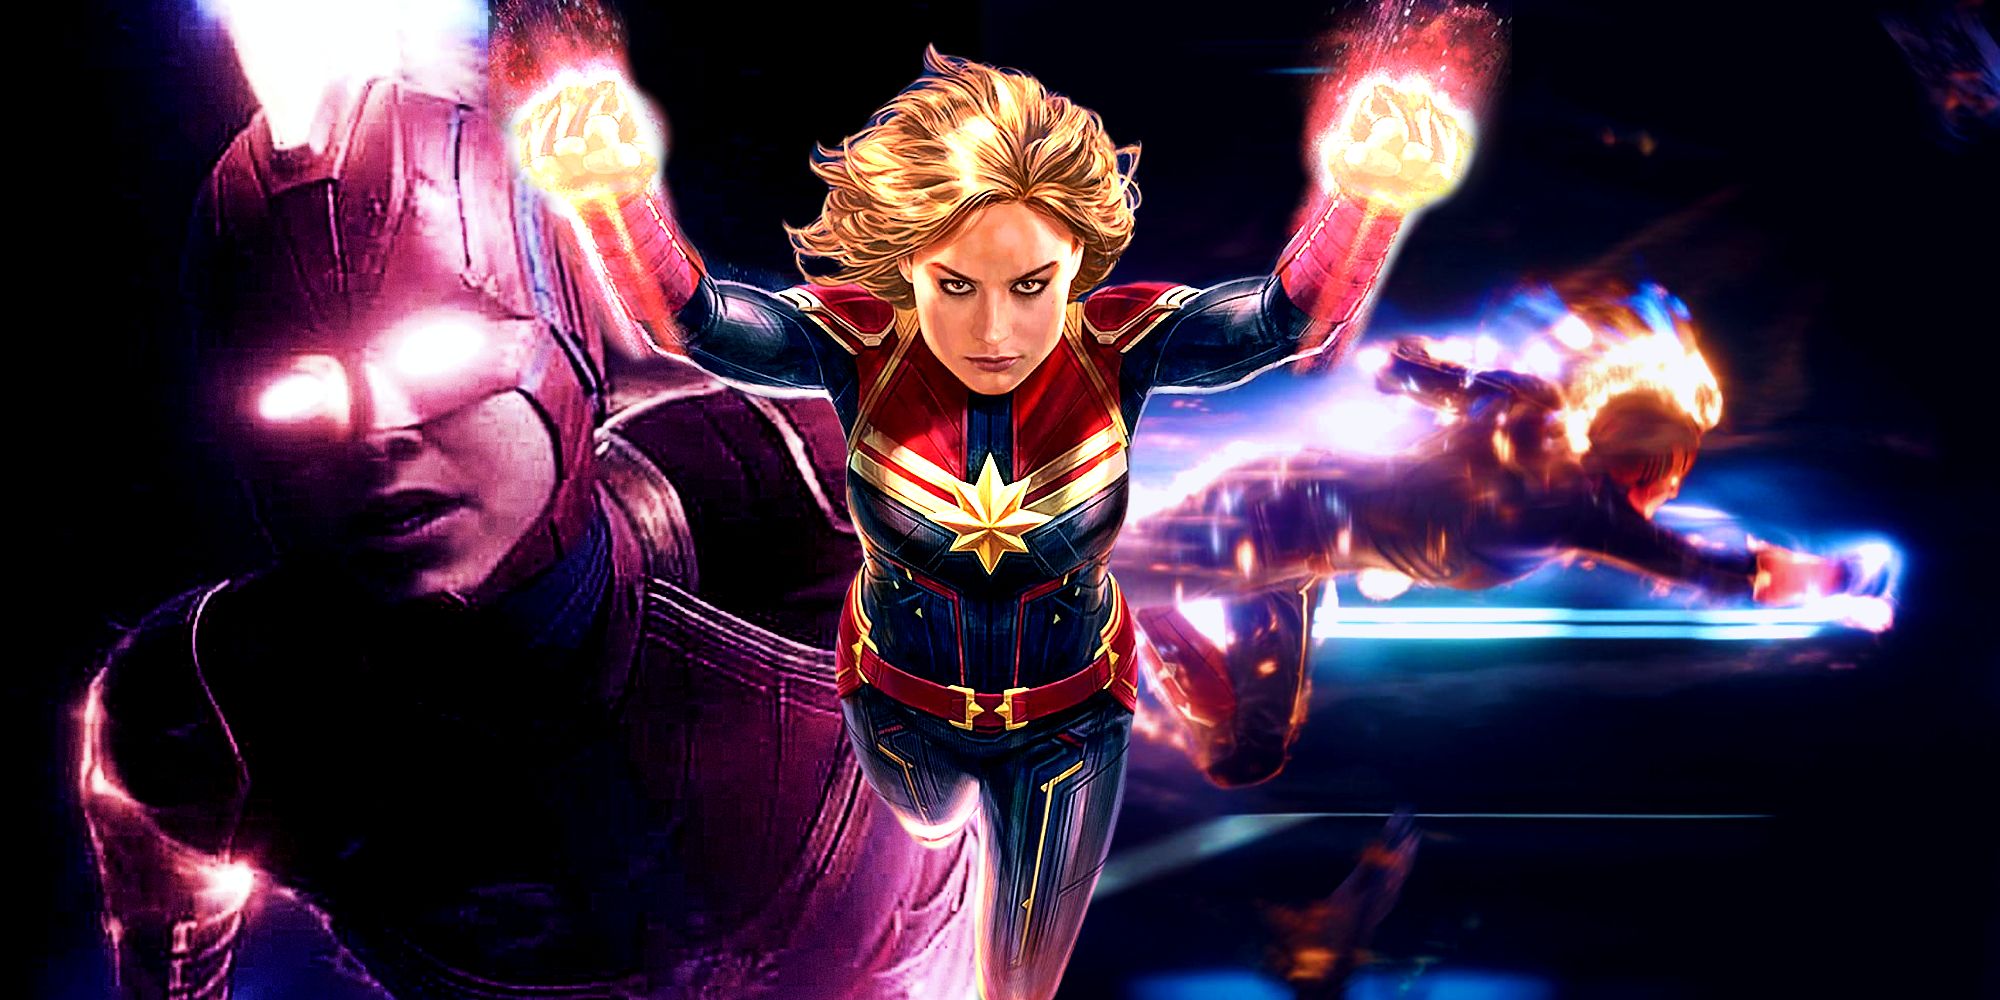 "No puedo destruirte, no puedo golpearte, no puedo arrojarte cosas": Captain Marvel nombra al único villano que sus poderes no pueden derrotar